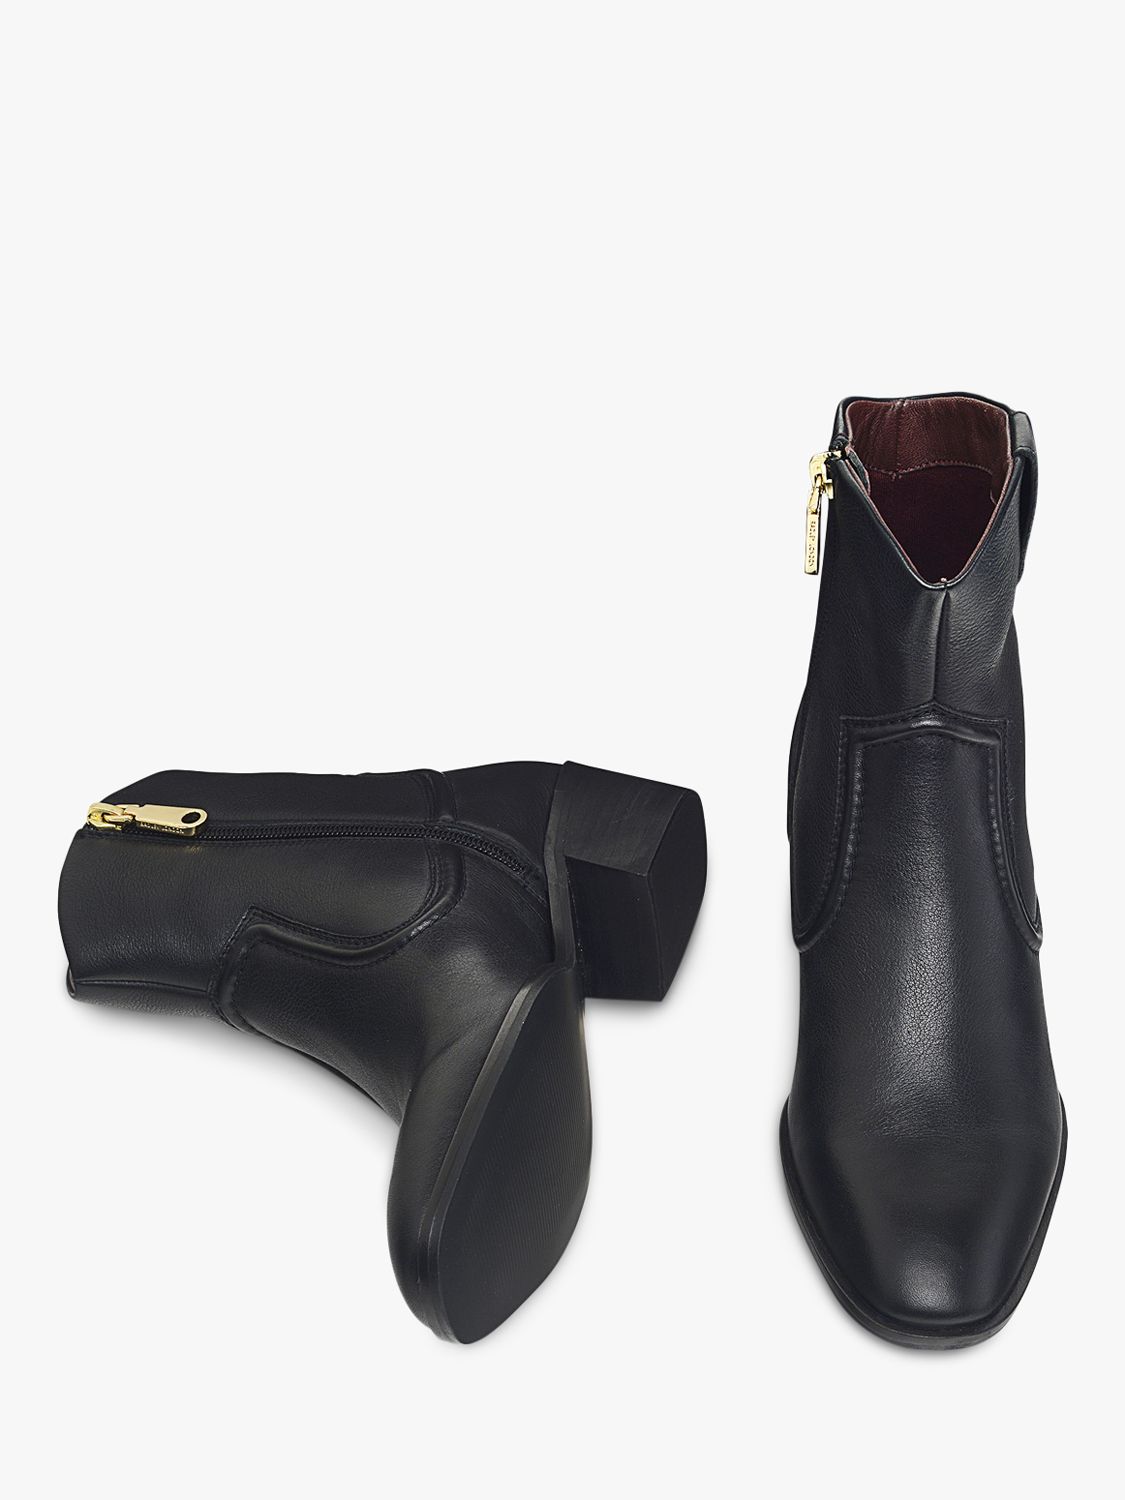 Radley Farrier Walk Westen Ankle Boots, Black, 4